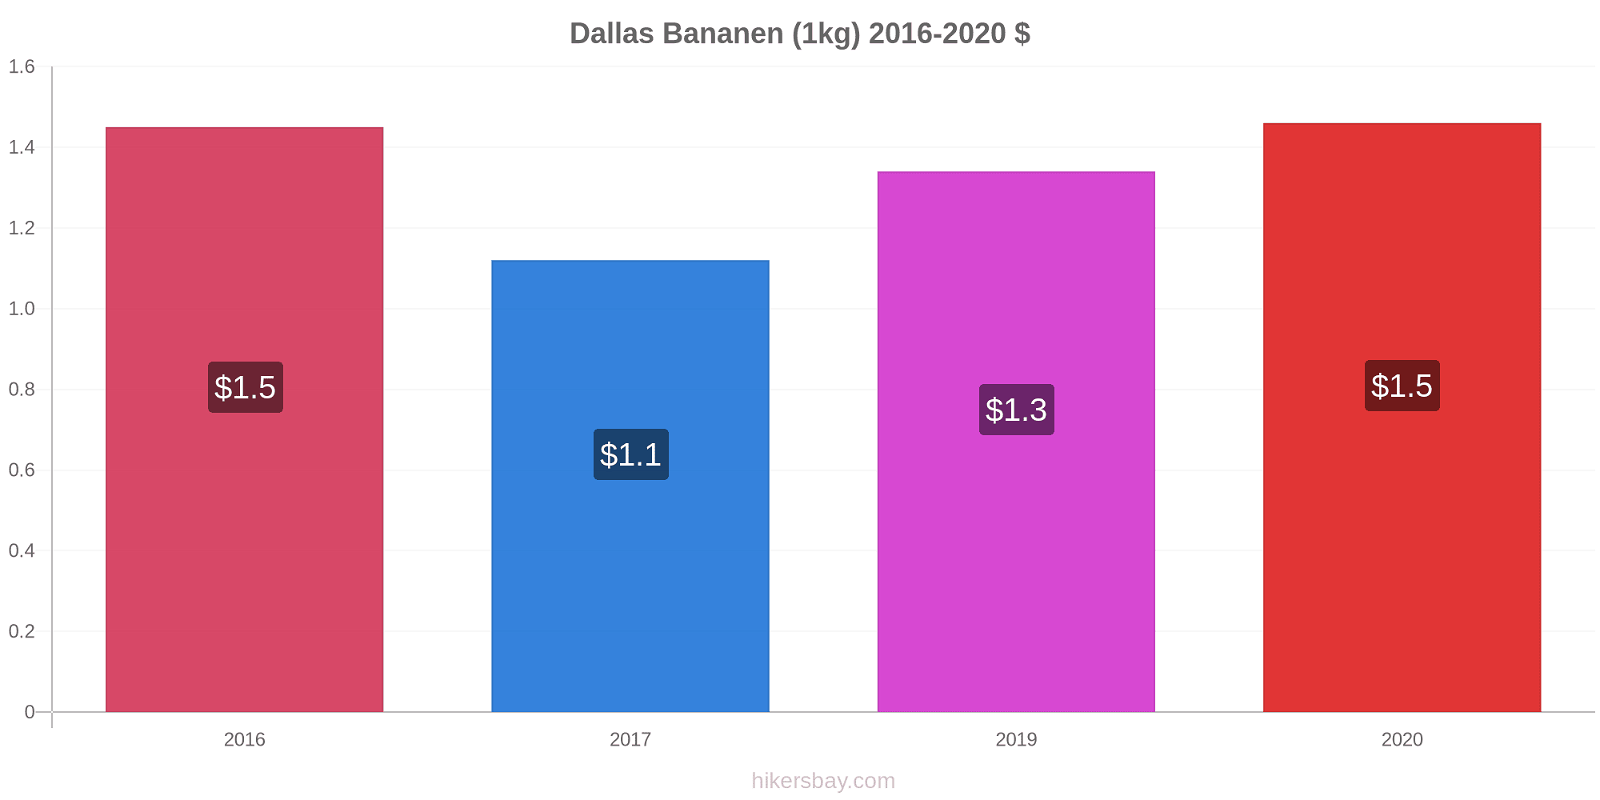 Dallas Preisänderungen Banane (1kg) hikersbay.com